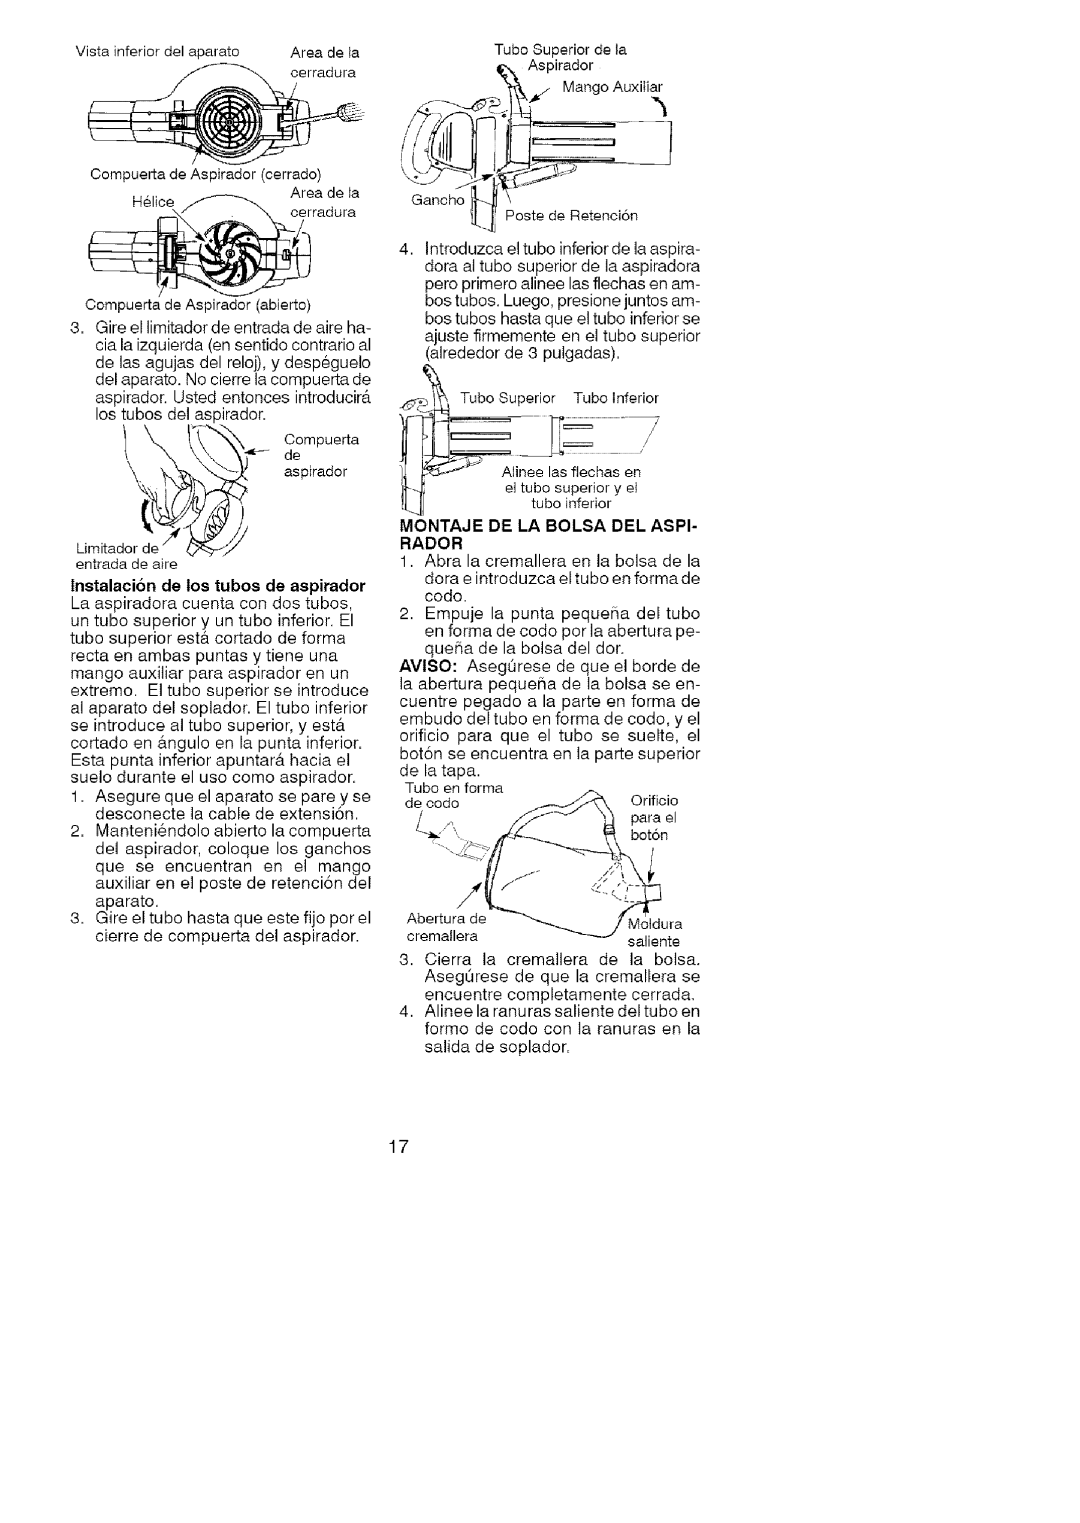 Craftsman 74822 manual ro do,a, Vistainferiordelaparato Areadela, i,I,111N IfI, lnstalacion de los tubos de aspirador 